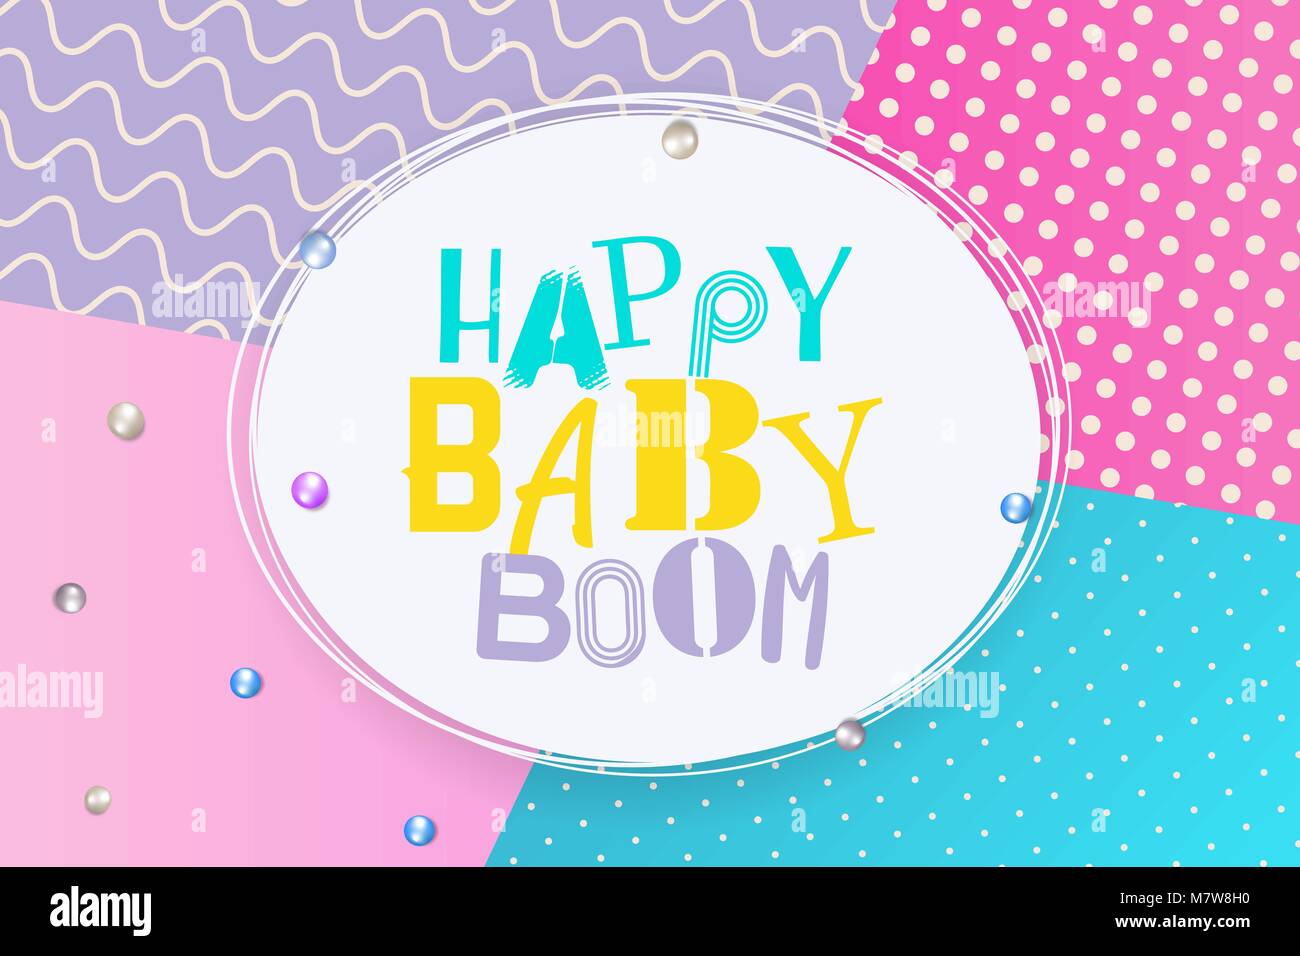 Baby boom happy birthday memphis style Stock Vector